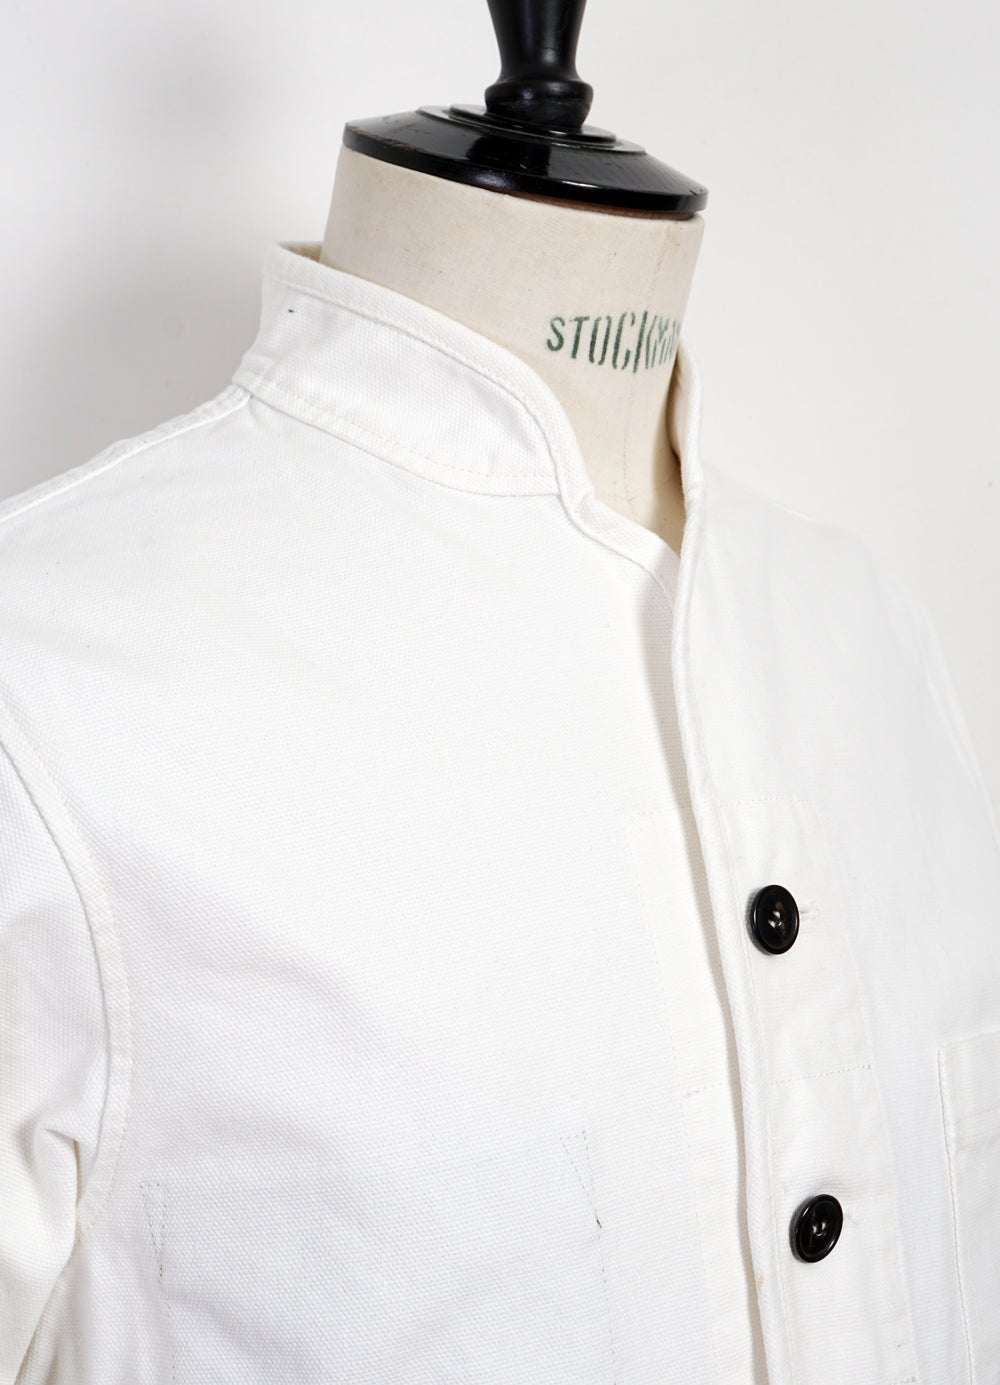 HANSEN GARMENTS - ERLING | Casual Work Jacket | Off White - HANSEN Garments